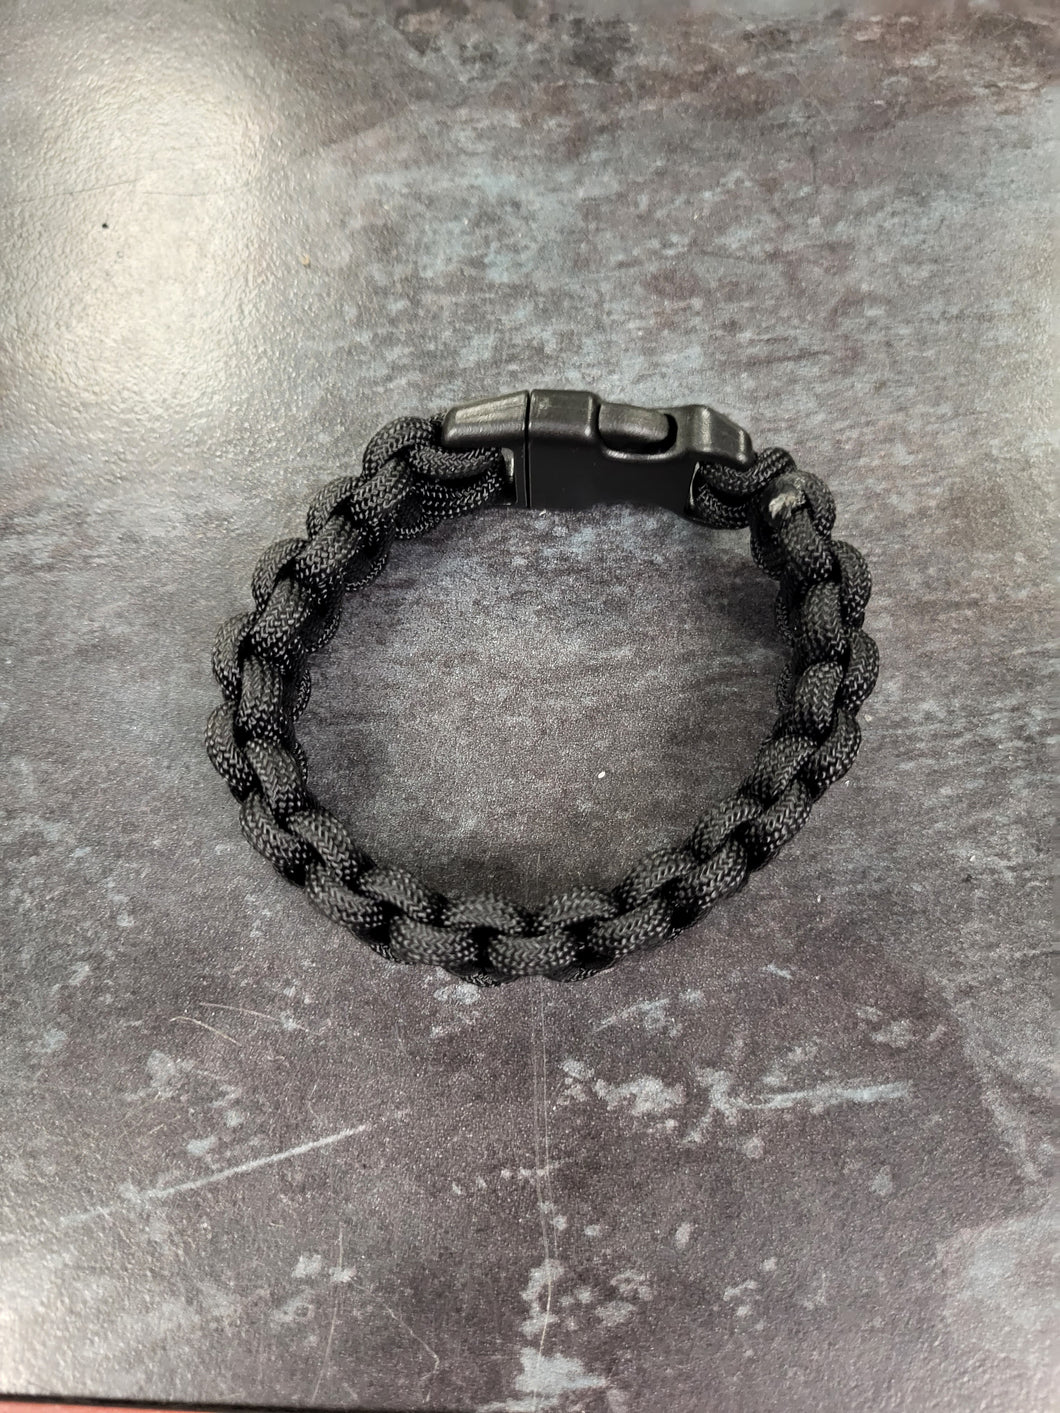 Hand made Para cord bracelets